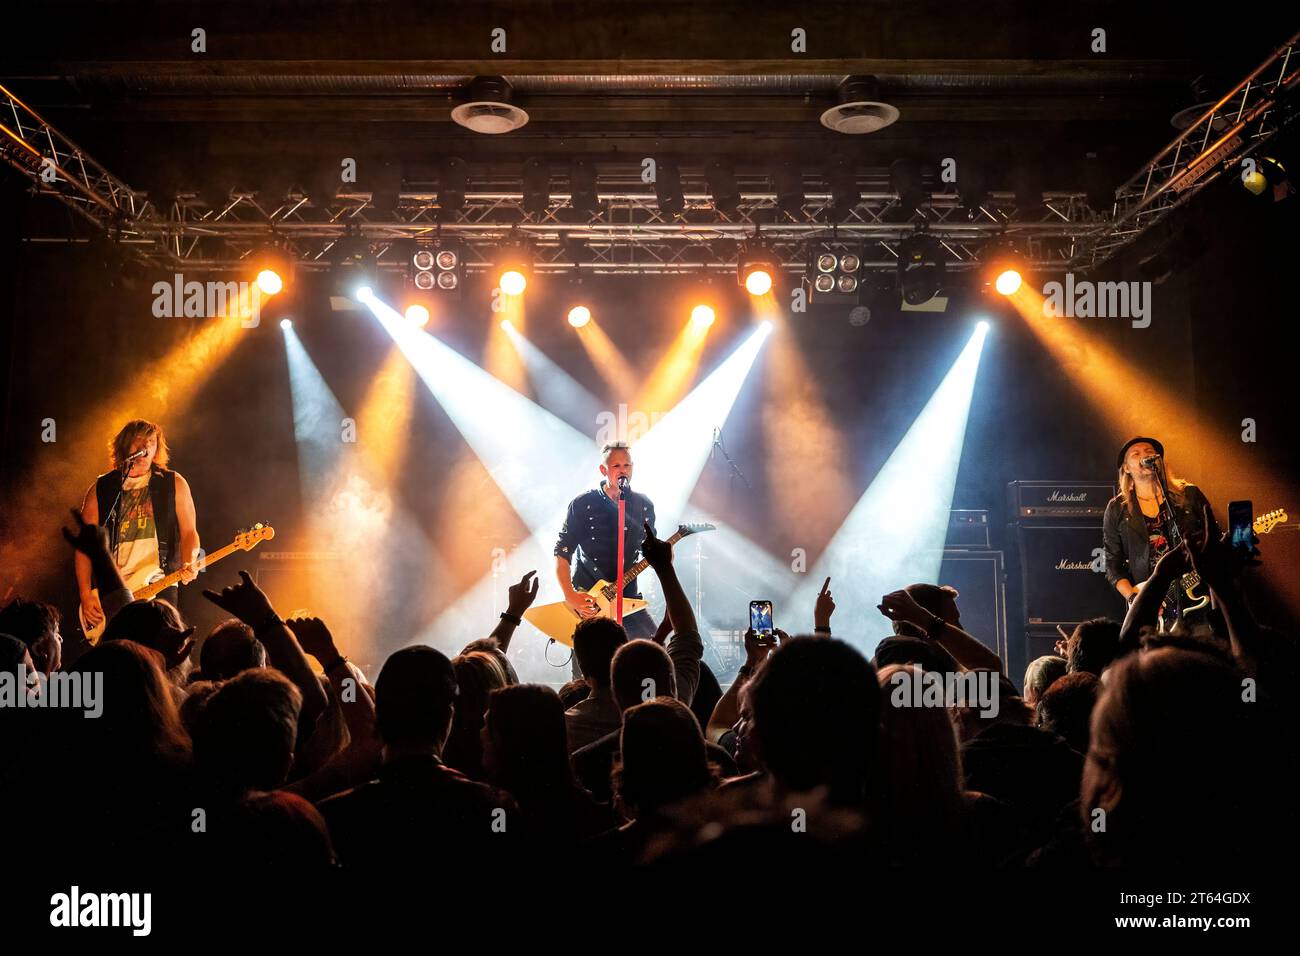 Oslo, Norvegia. 28 ottobre 2023. La band hard rock svedese Eclipse esegue un concerto dal vivo alla Vulkan Arena come parte dell'Oslo Rock Fest 2023 a Oslo. Qui il cantante e chitarrista Erik Maartensson è visto dal vivo sul palco. (Foto: Gonzales Photo - Terje Dokken). Foto Stock